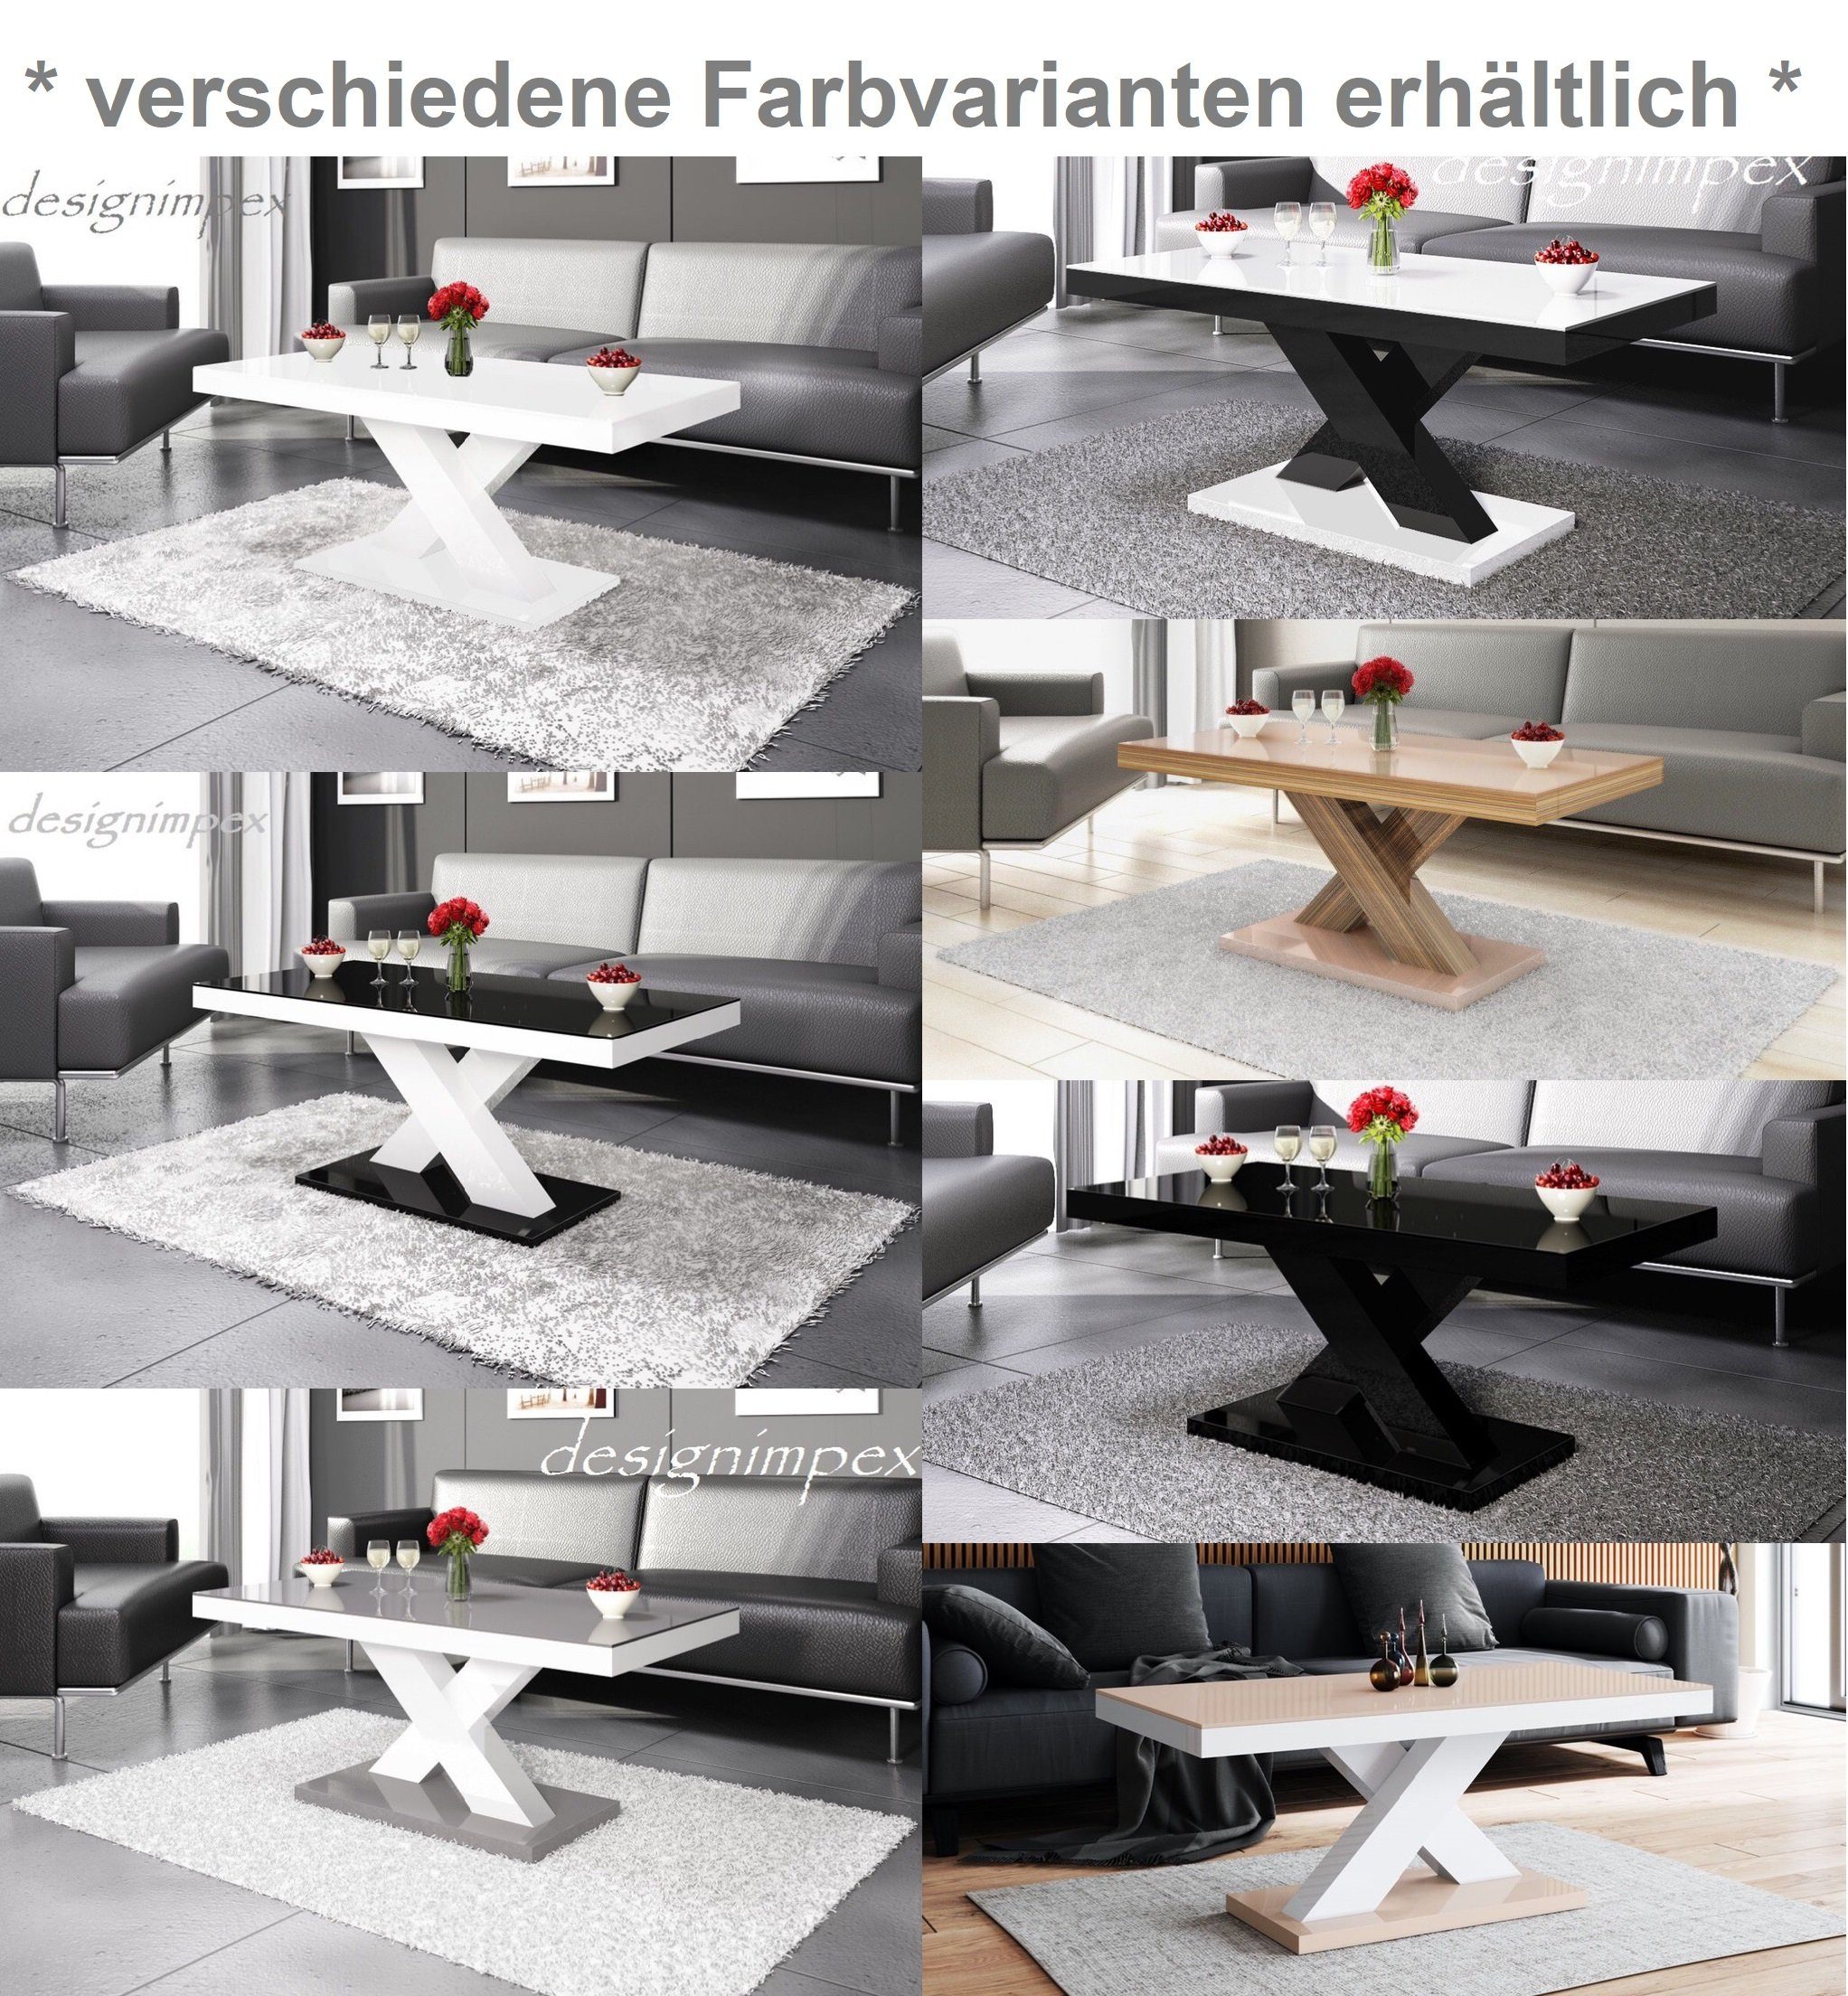 Wohnzimmertisch Design H-888 Schwarz Couchtisch Tisch Hochglanz designimpex